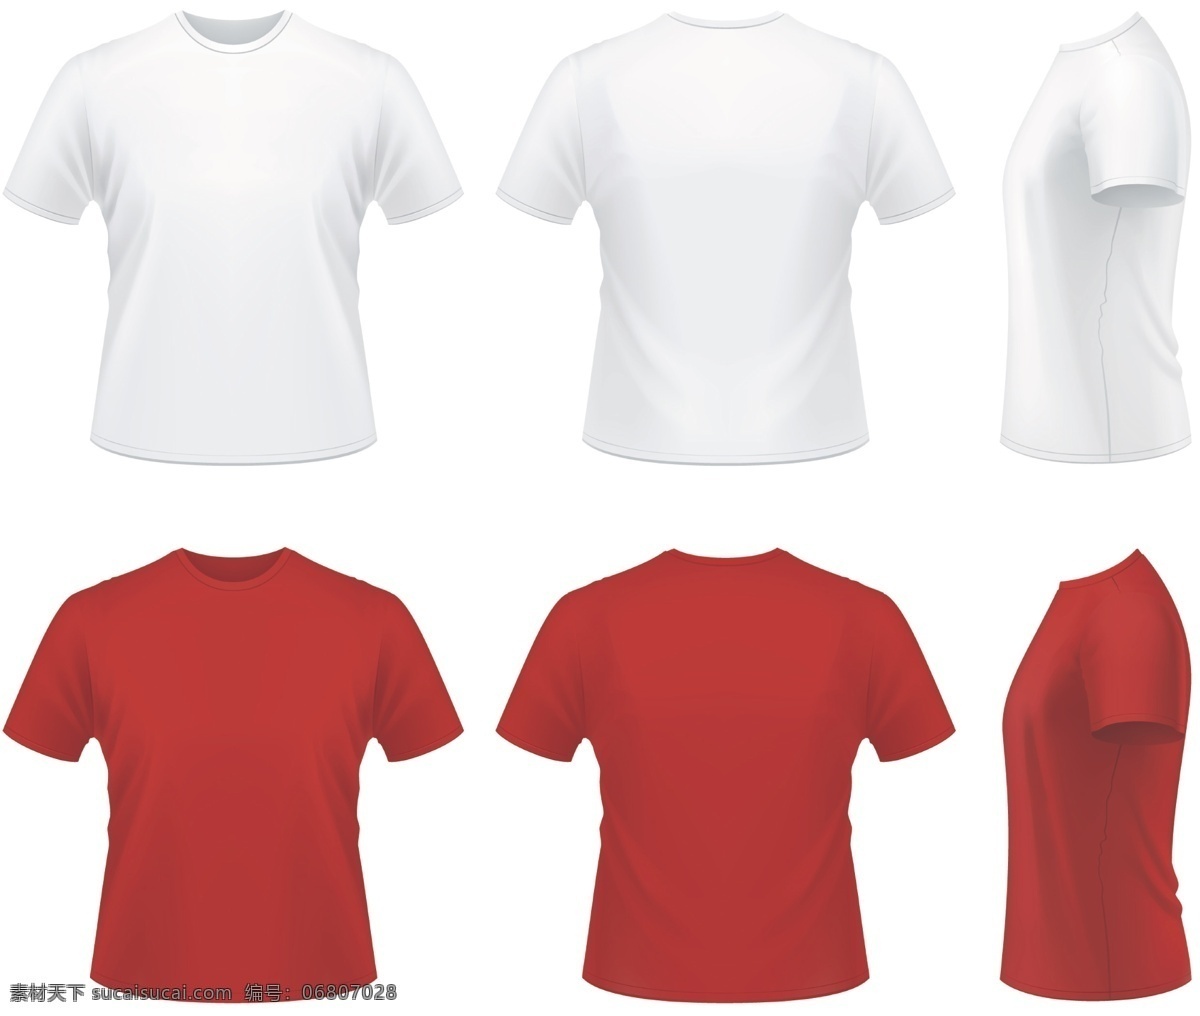 空白 文化衫 t 恤 效果图 矢量 编辑 空白文化衫 t恤 可编辑 服装设计